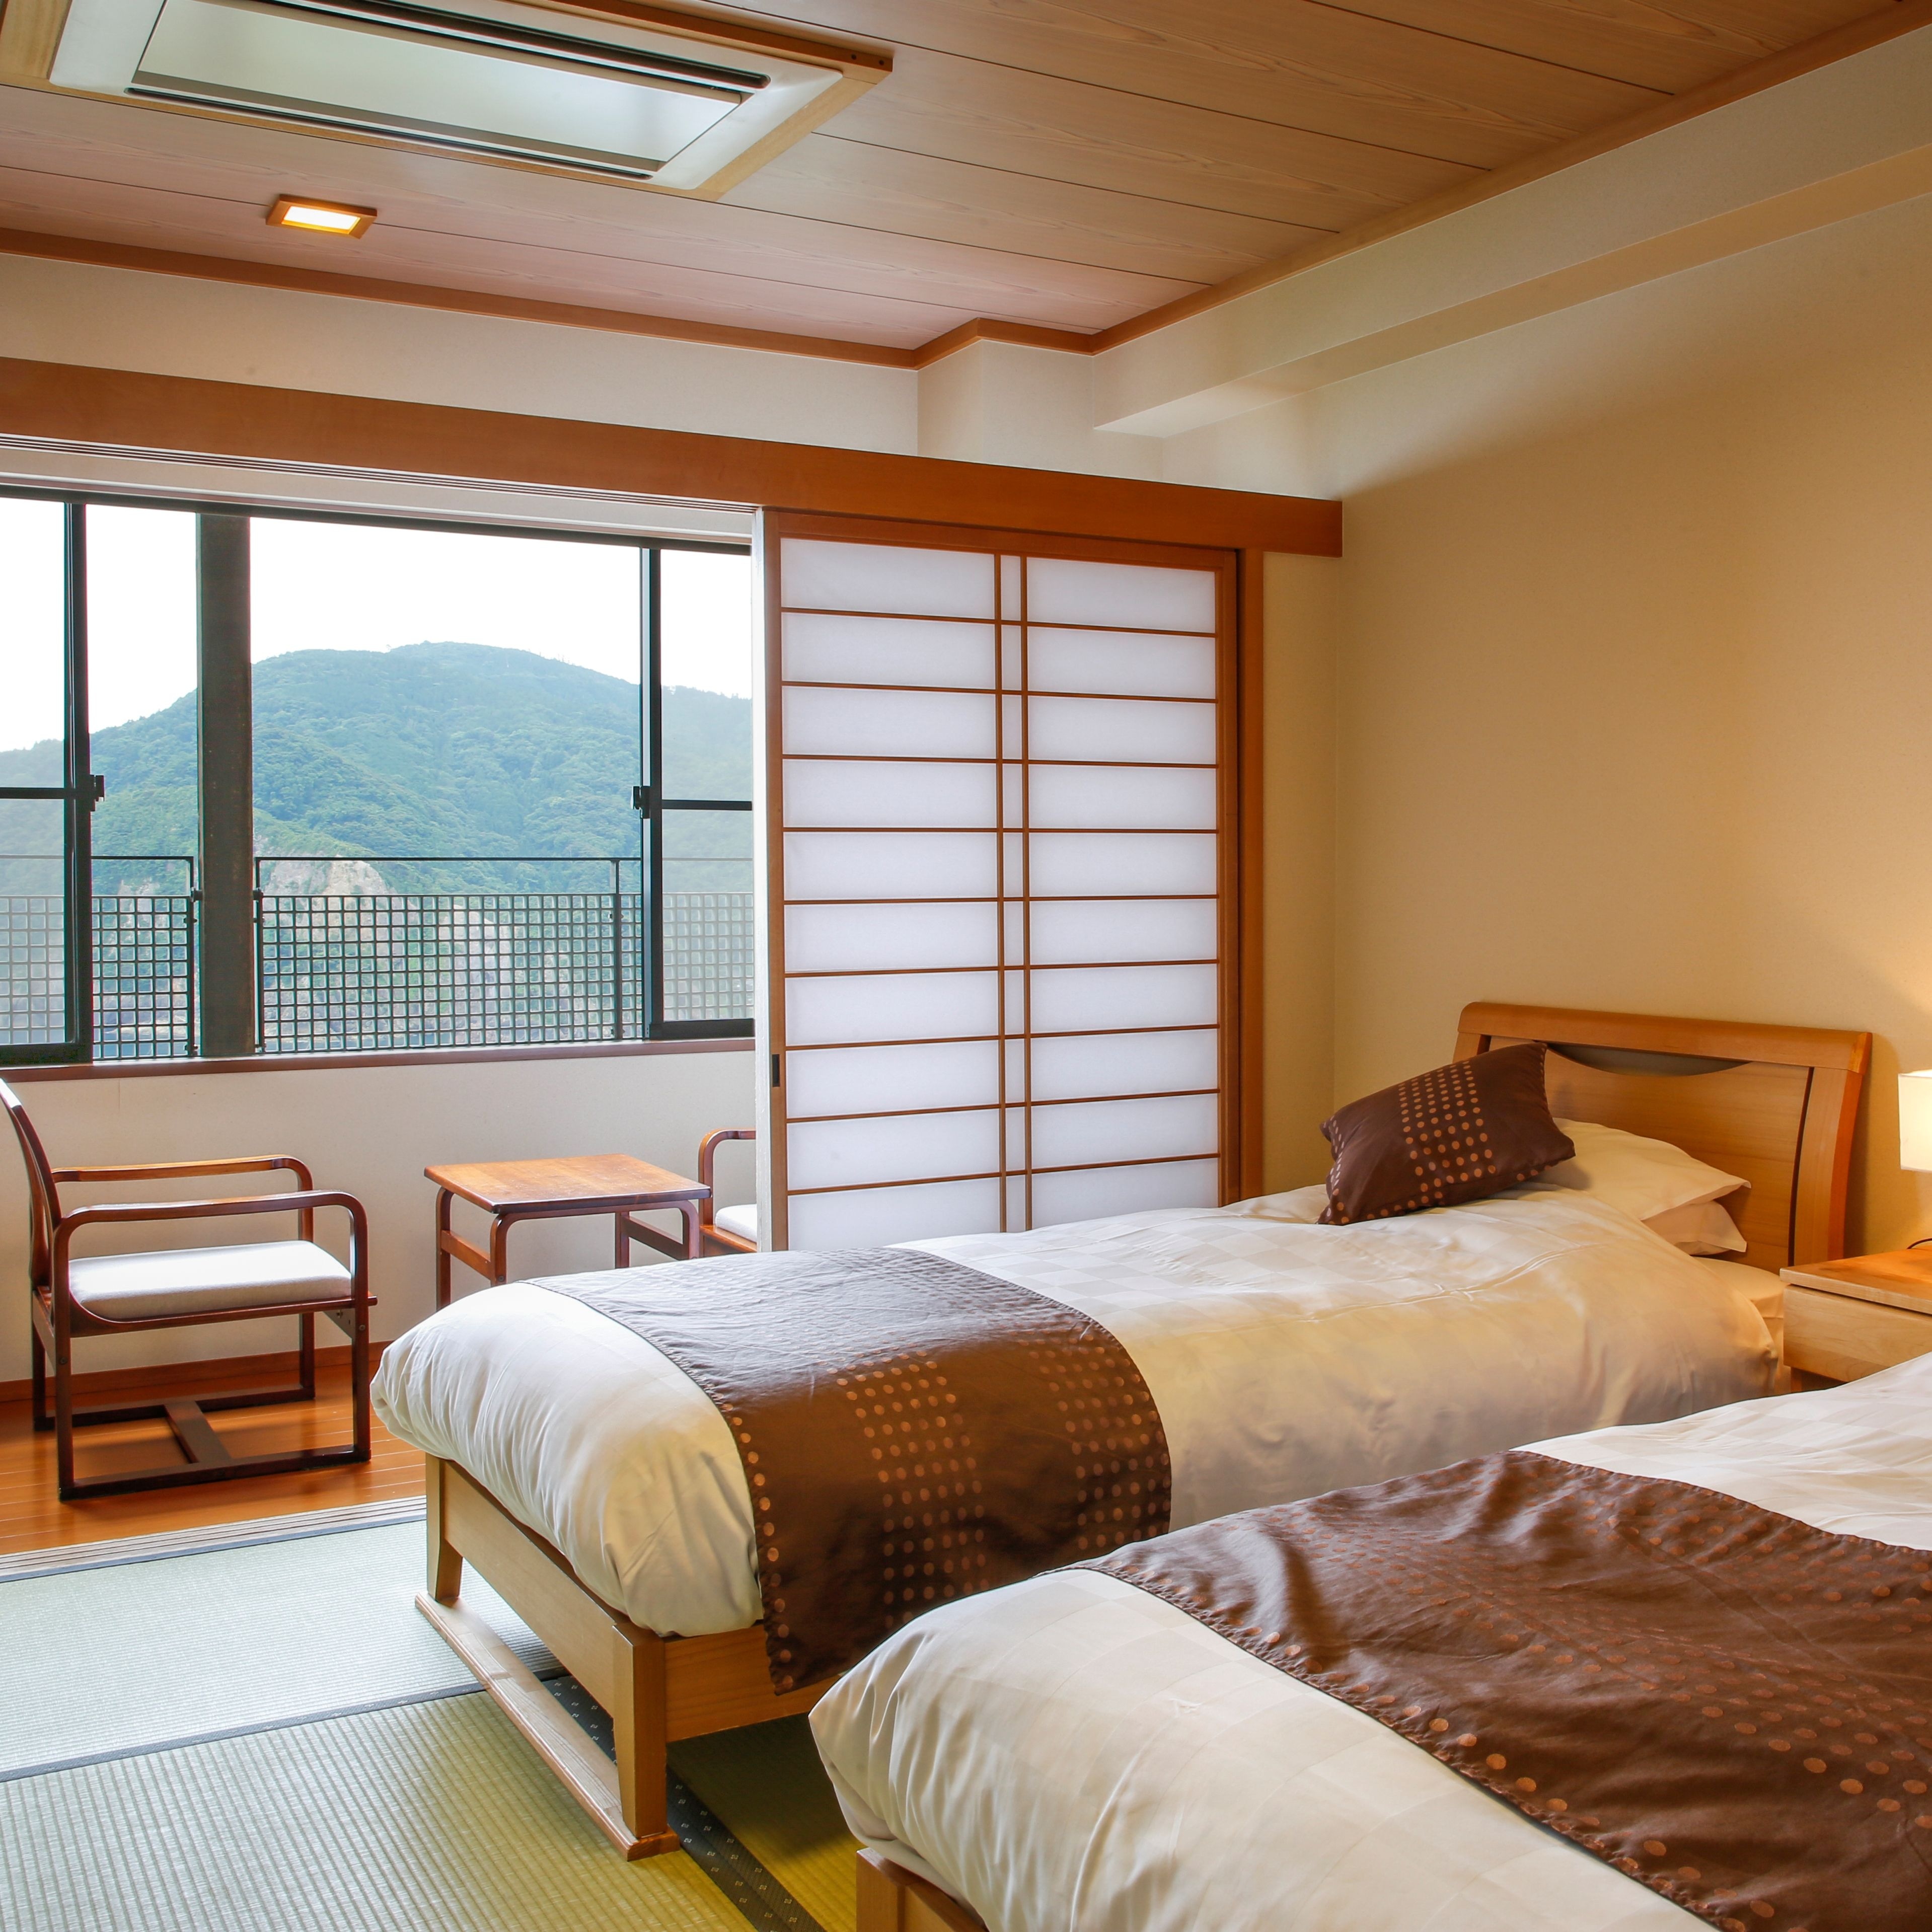 Kamar Jepang dan Barat dengan tikar tatami Sebuah "ruang santai" di mana orang Jepang dapat bersantai dengan tikar tatami yang paling menenangkan.